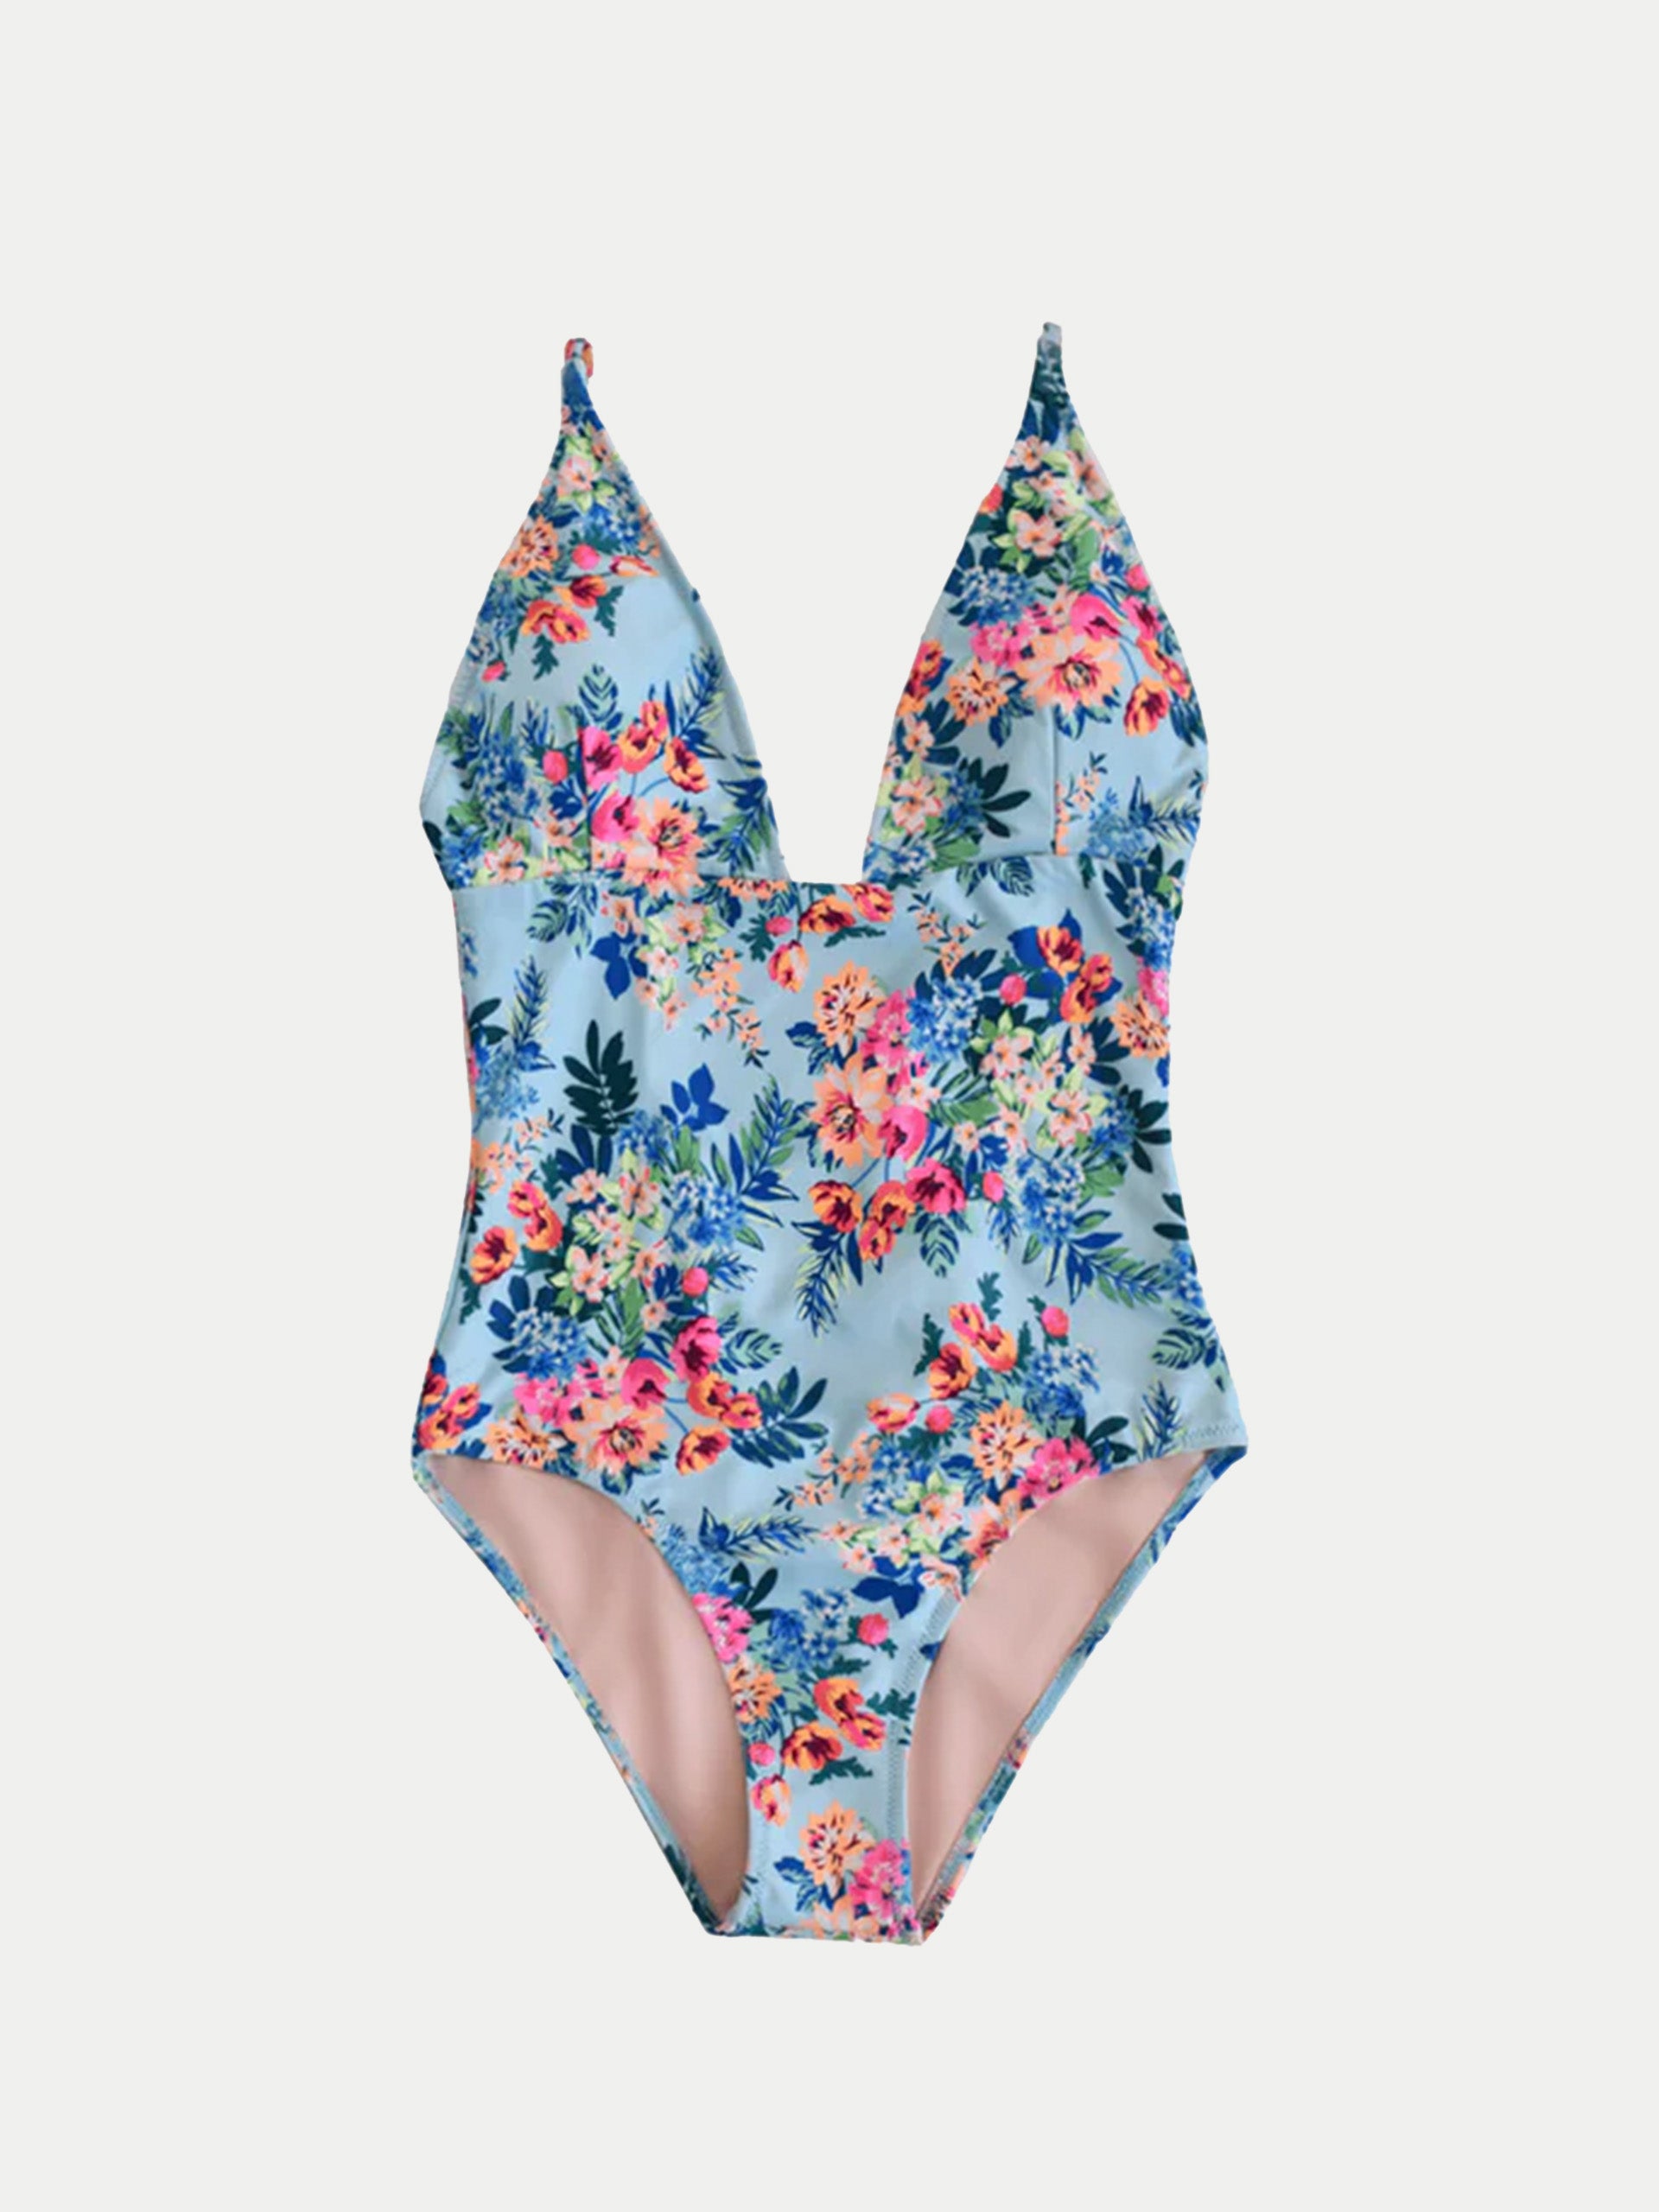 'Multi Flowers' Womens Swimwear by 98 Coast Av.